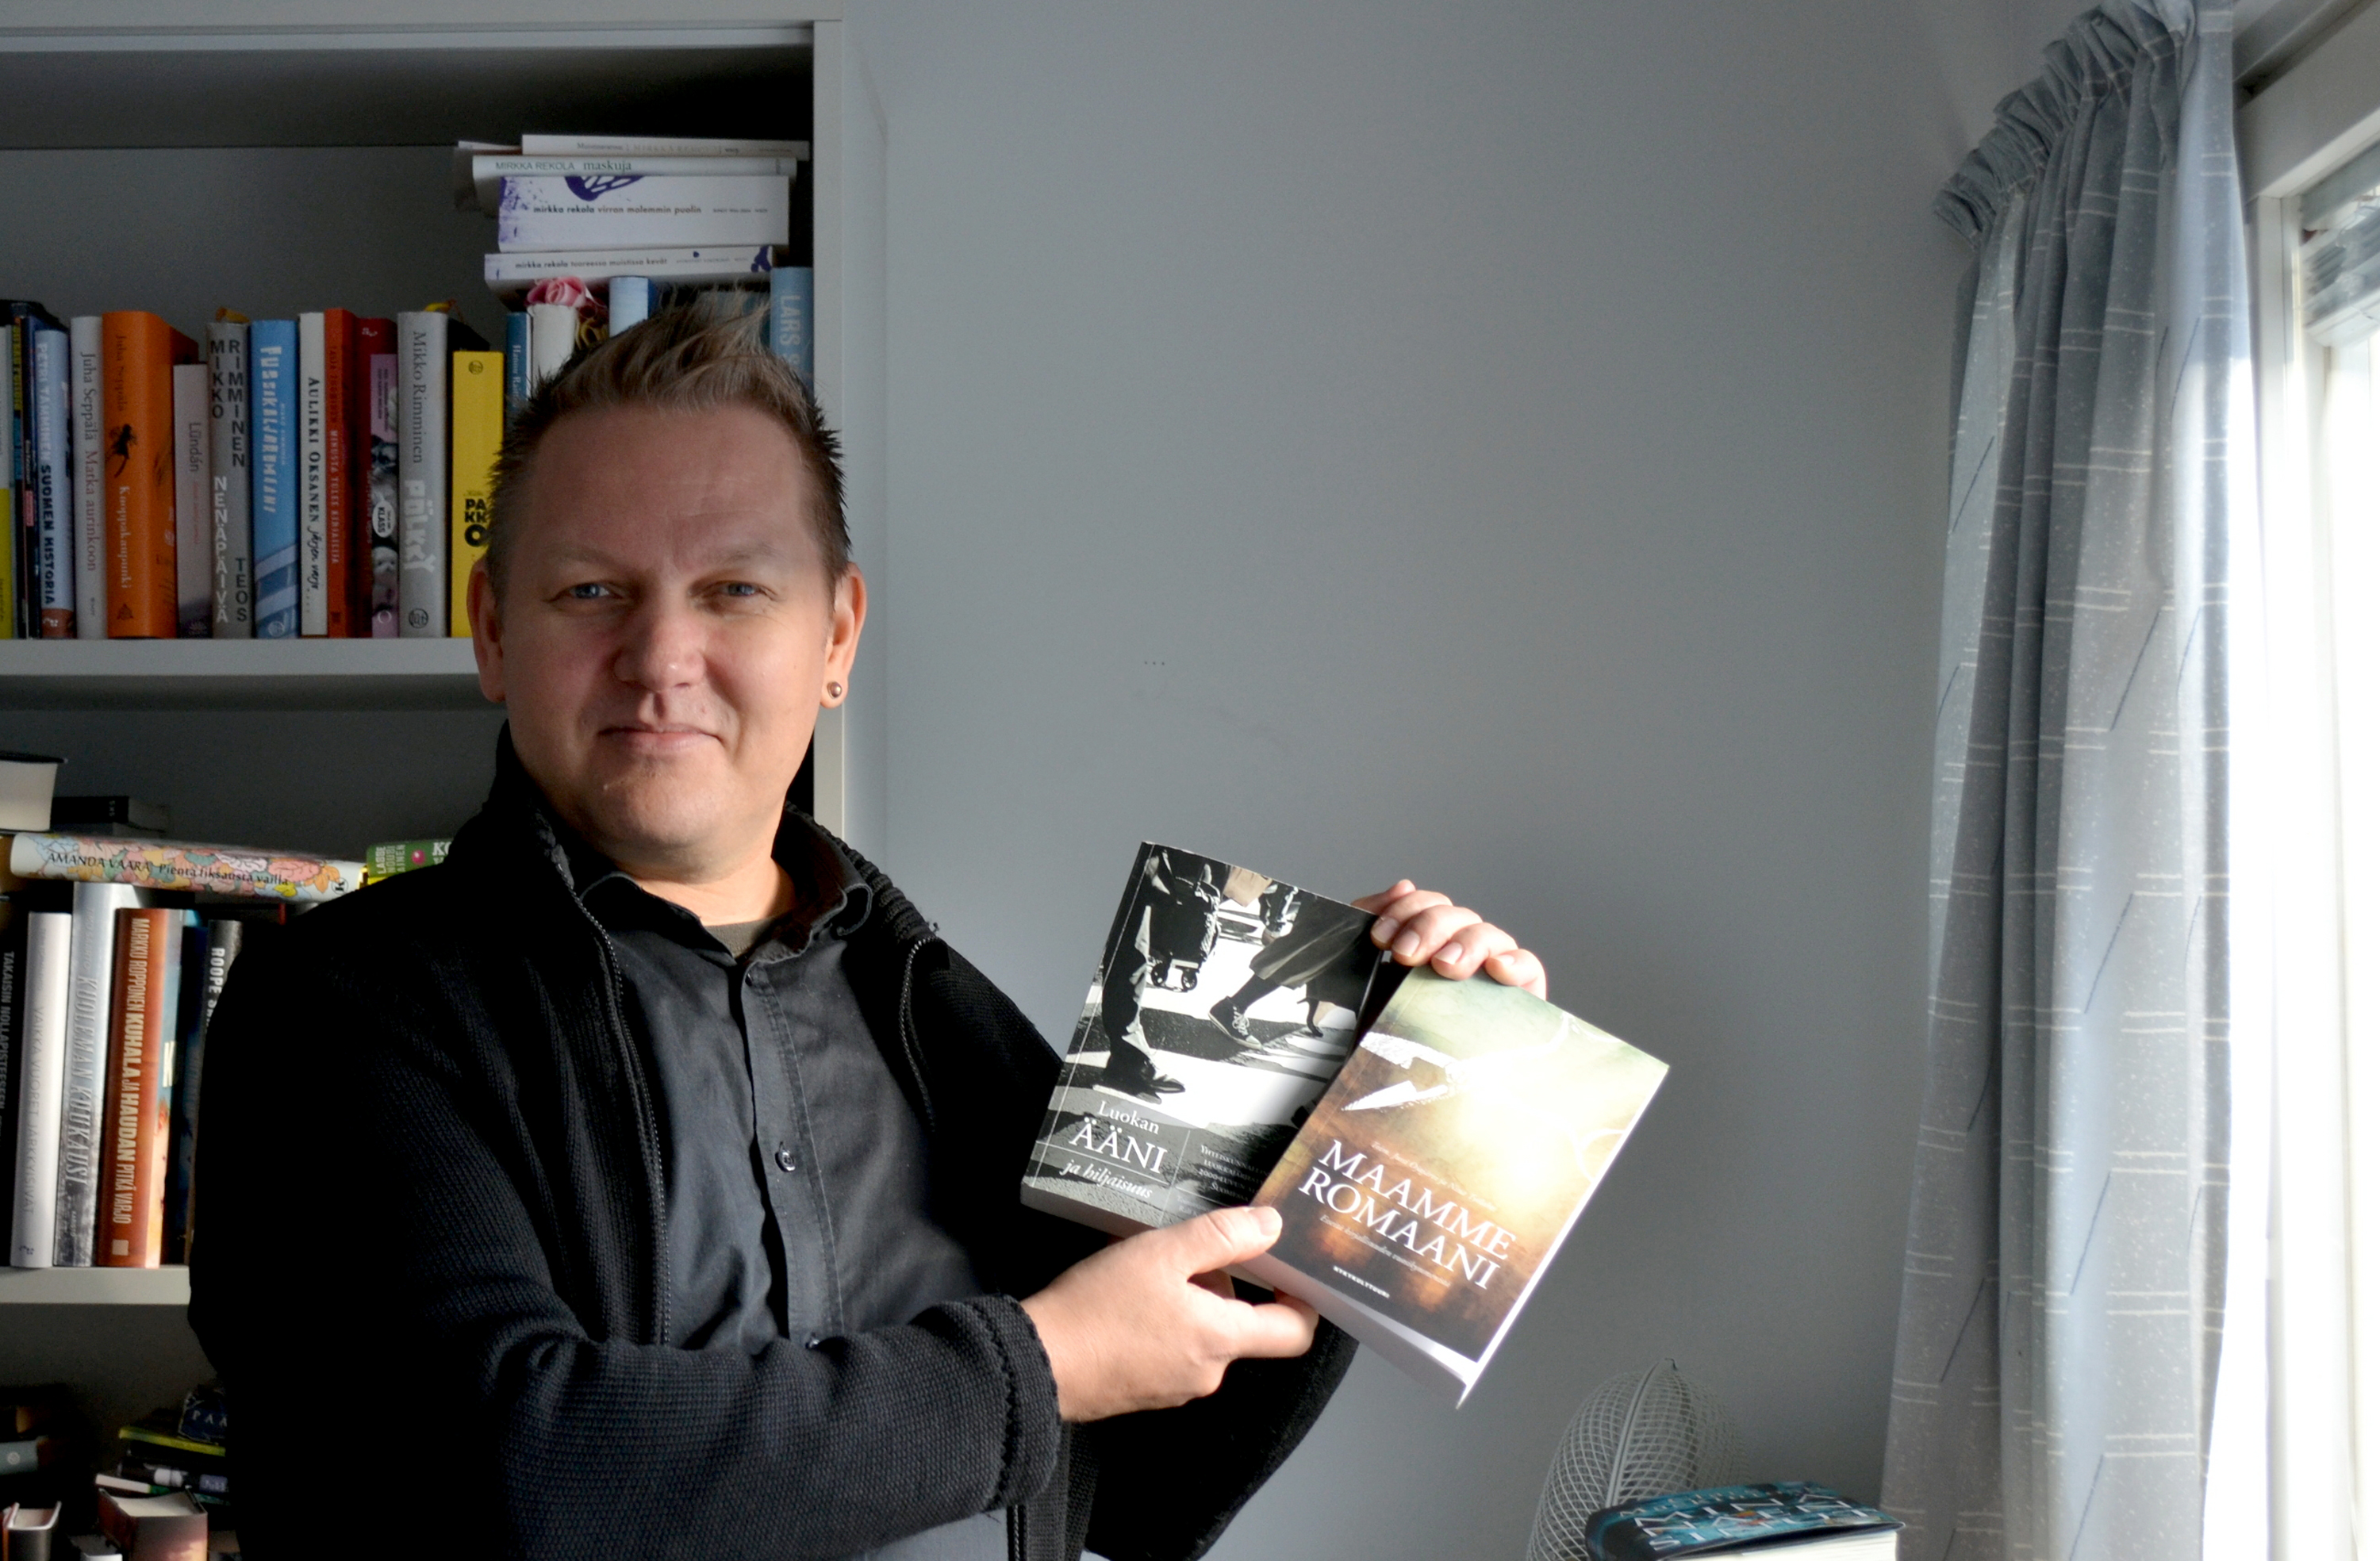 Oulun yliopiston kirjallisuuden oppiaine on aktiivisesti mukana tuoreissa alan teoksissa. Jussi Ojajärvi esittelee teoksia Maamme romaani ja Luokan ääni ja hiljaisuus.